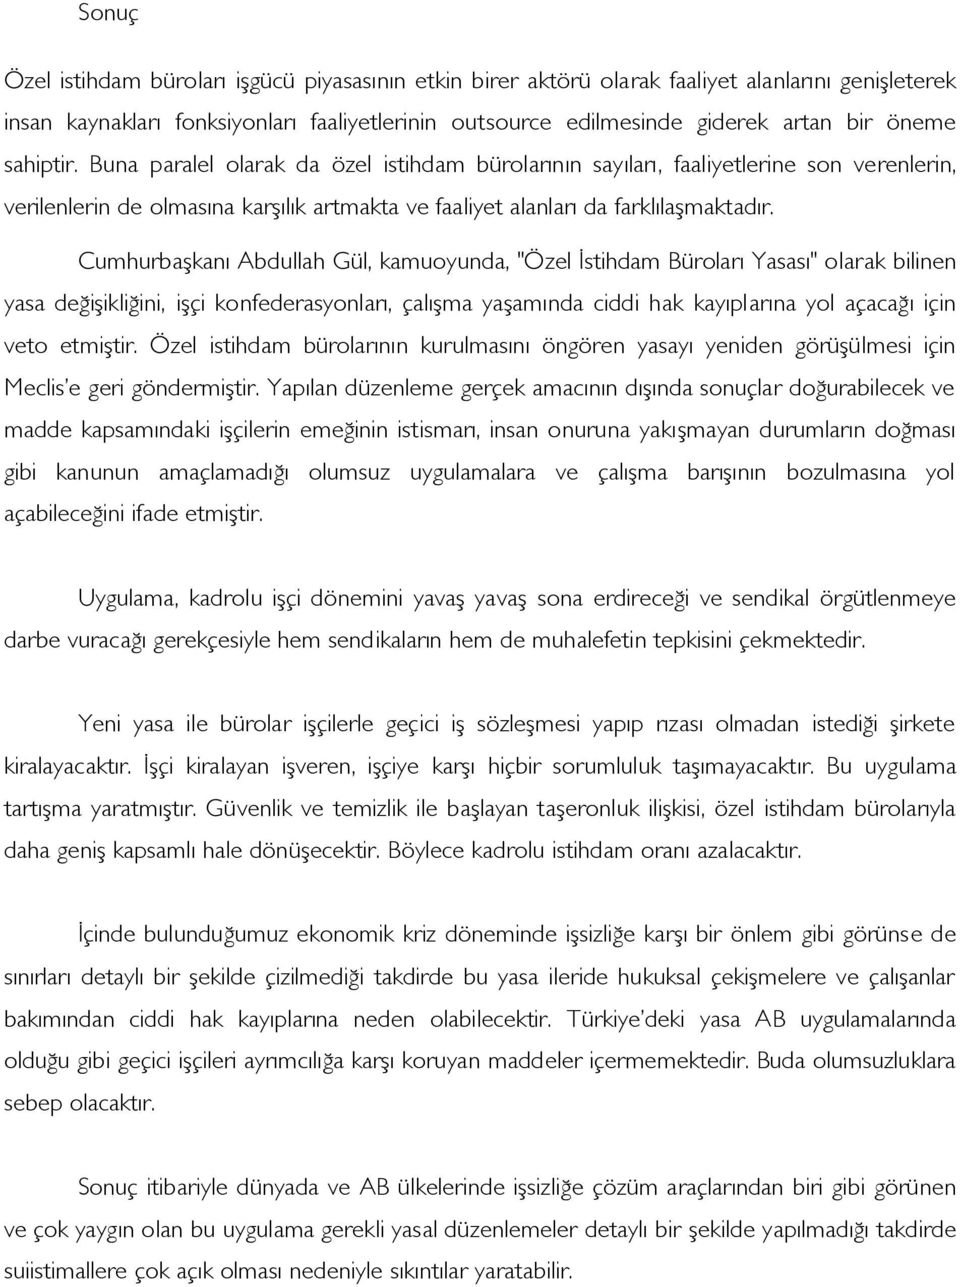 Cumhurbaşkanı Abdullah Gül, kamuoyunda, "Özel İstihdam Büroları Yasası" olarak bilinen yasa değişikliğini, işçi konfederasyonları, çalışma yaşamında ciddi hak kayıplarına yol açacağı için veto